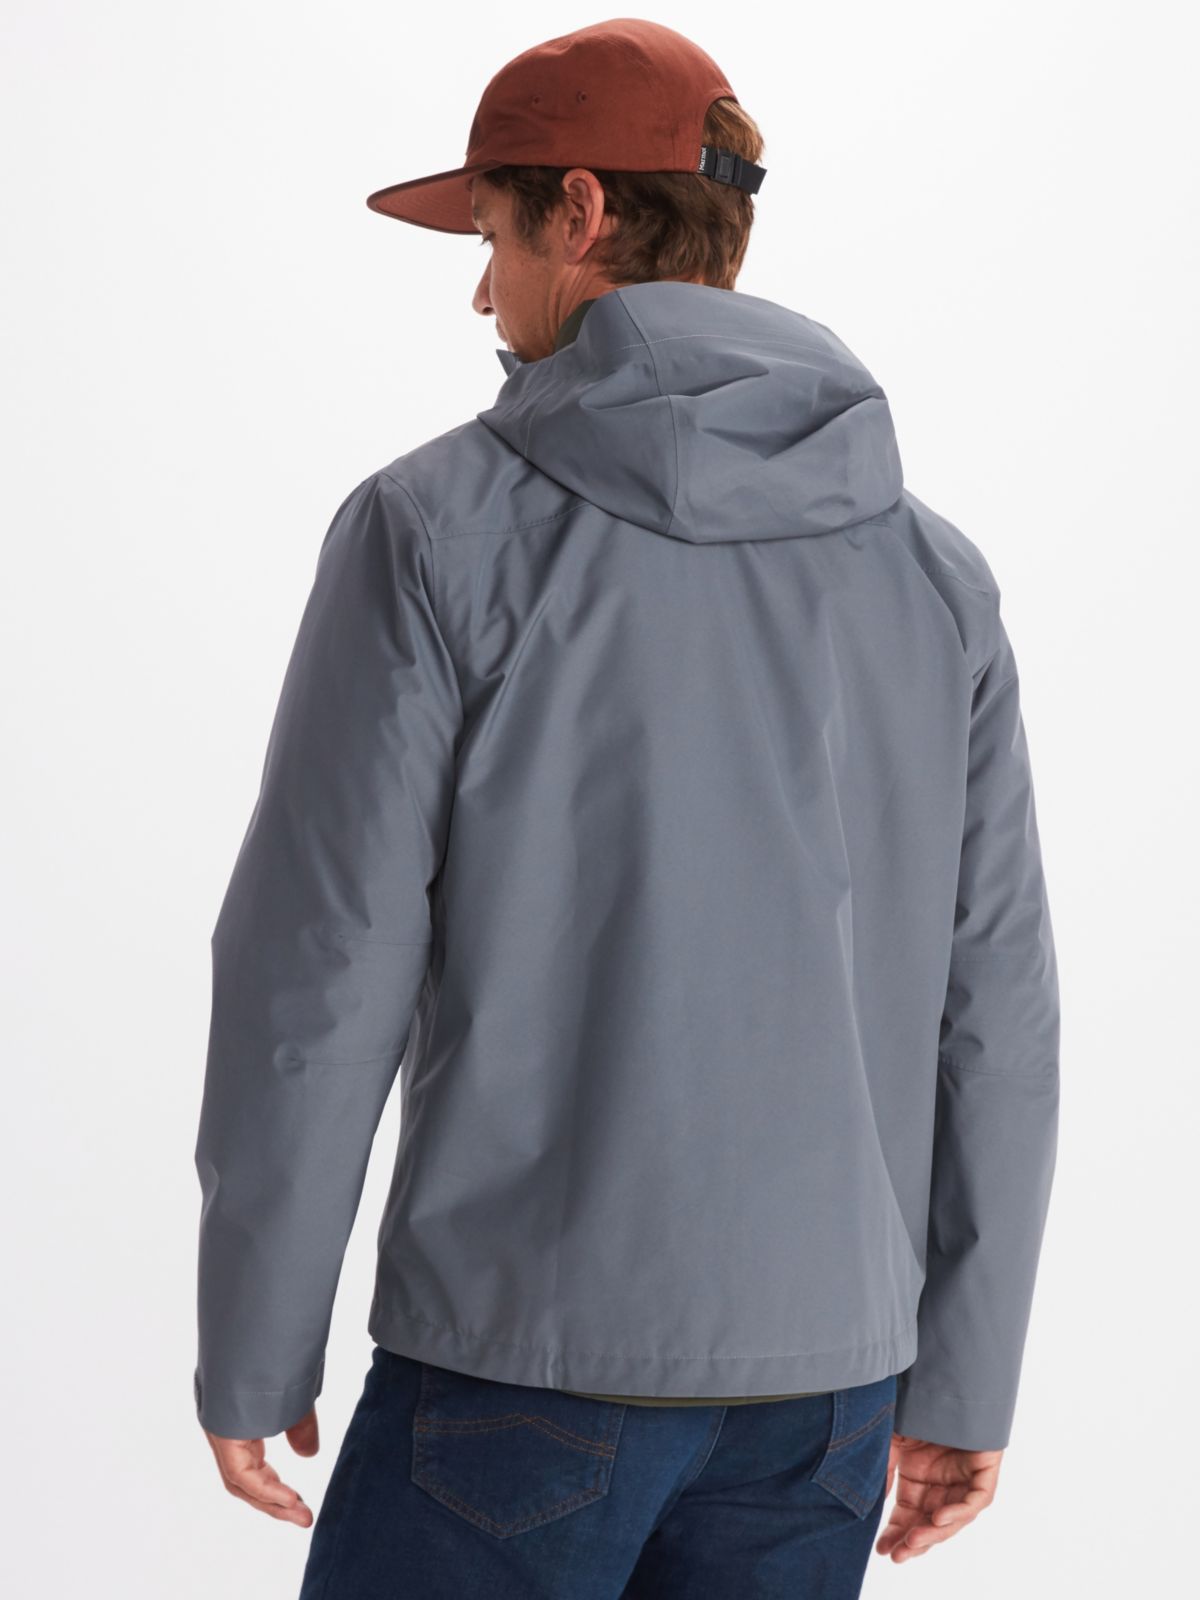 Model in Marmot men's rain wear in gray with attached hood